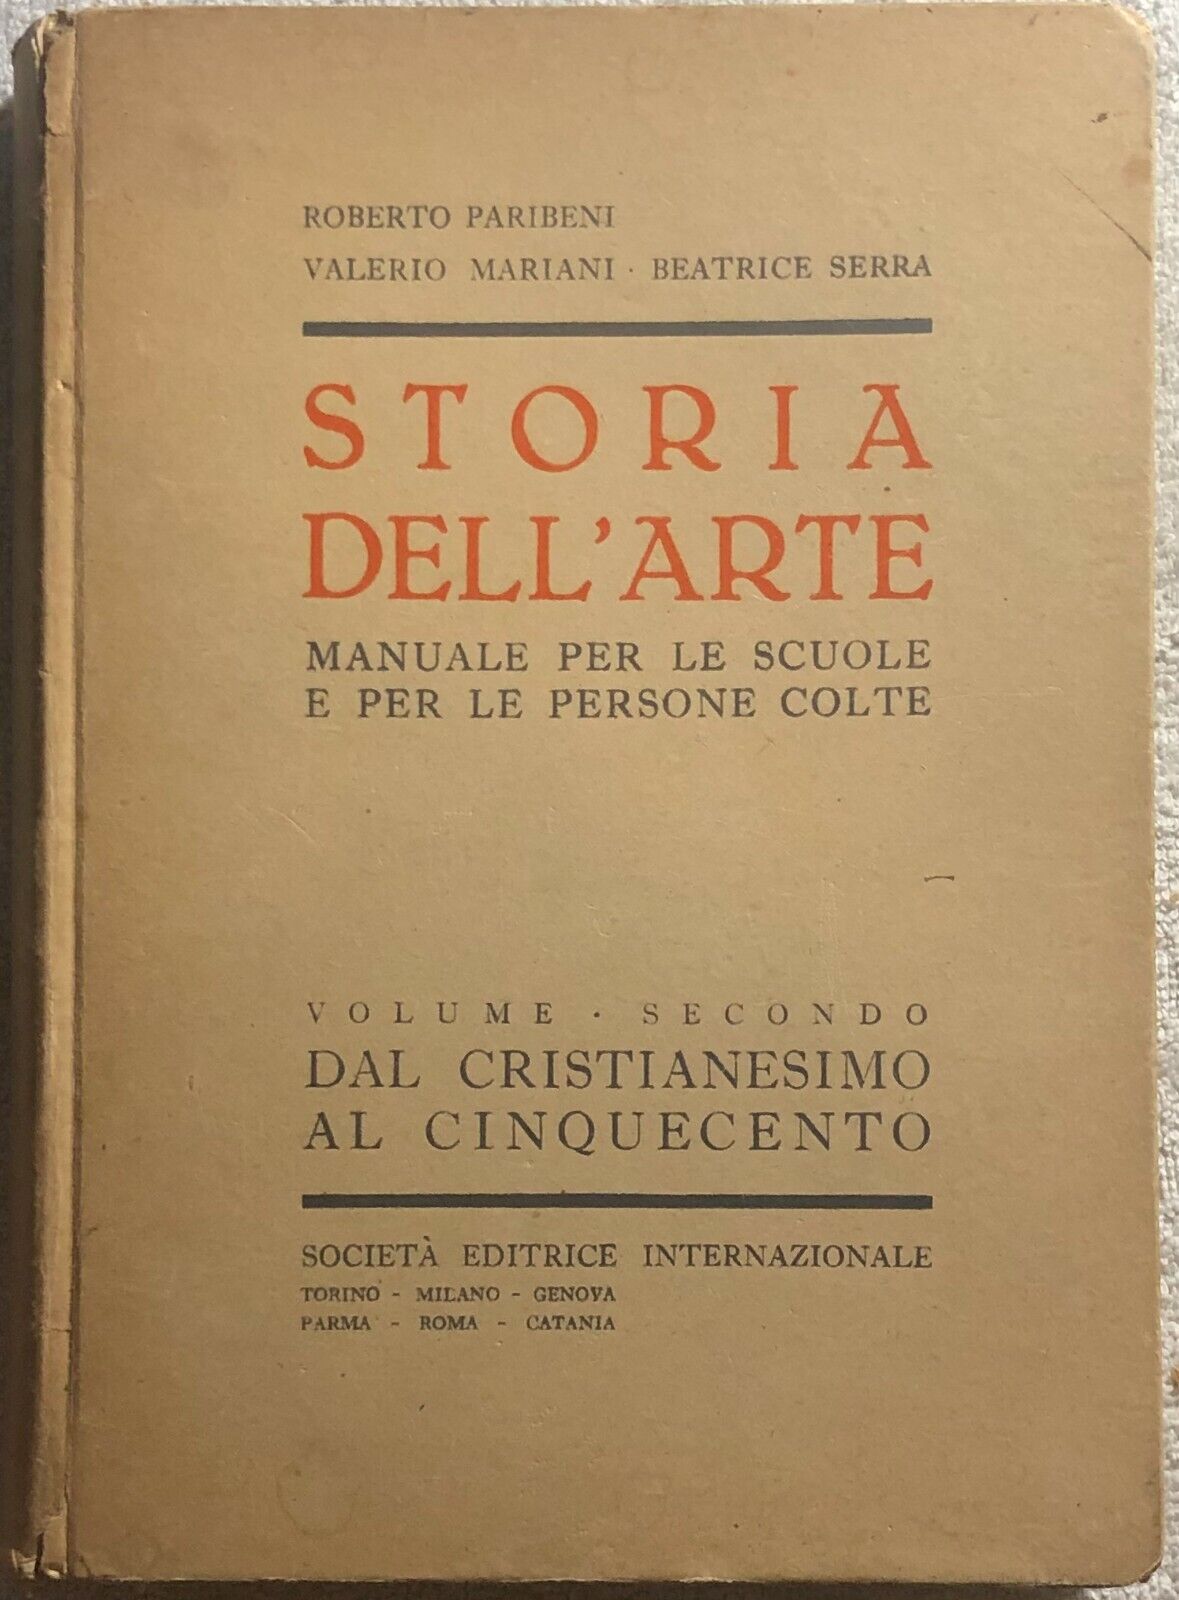 Storia delL'arte Vol. II di Aa.vv.,  1951,  Societ? Editrice Internazionale